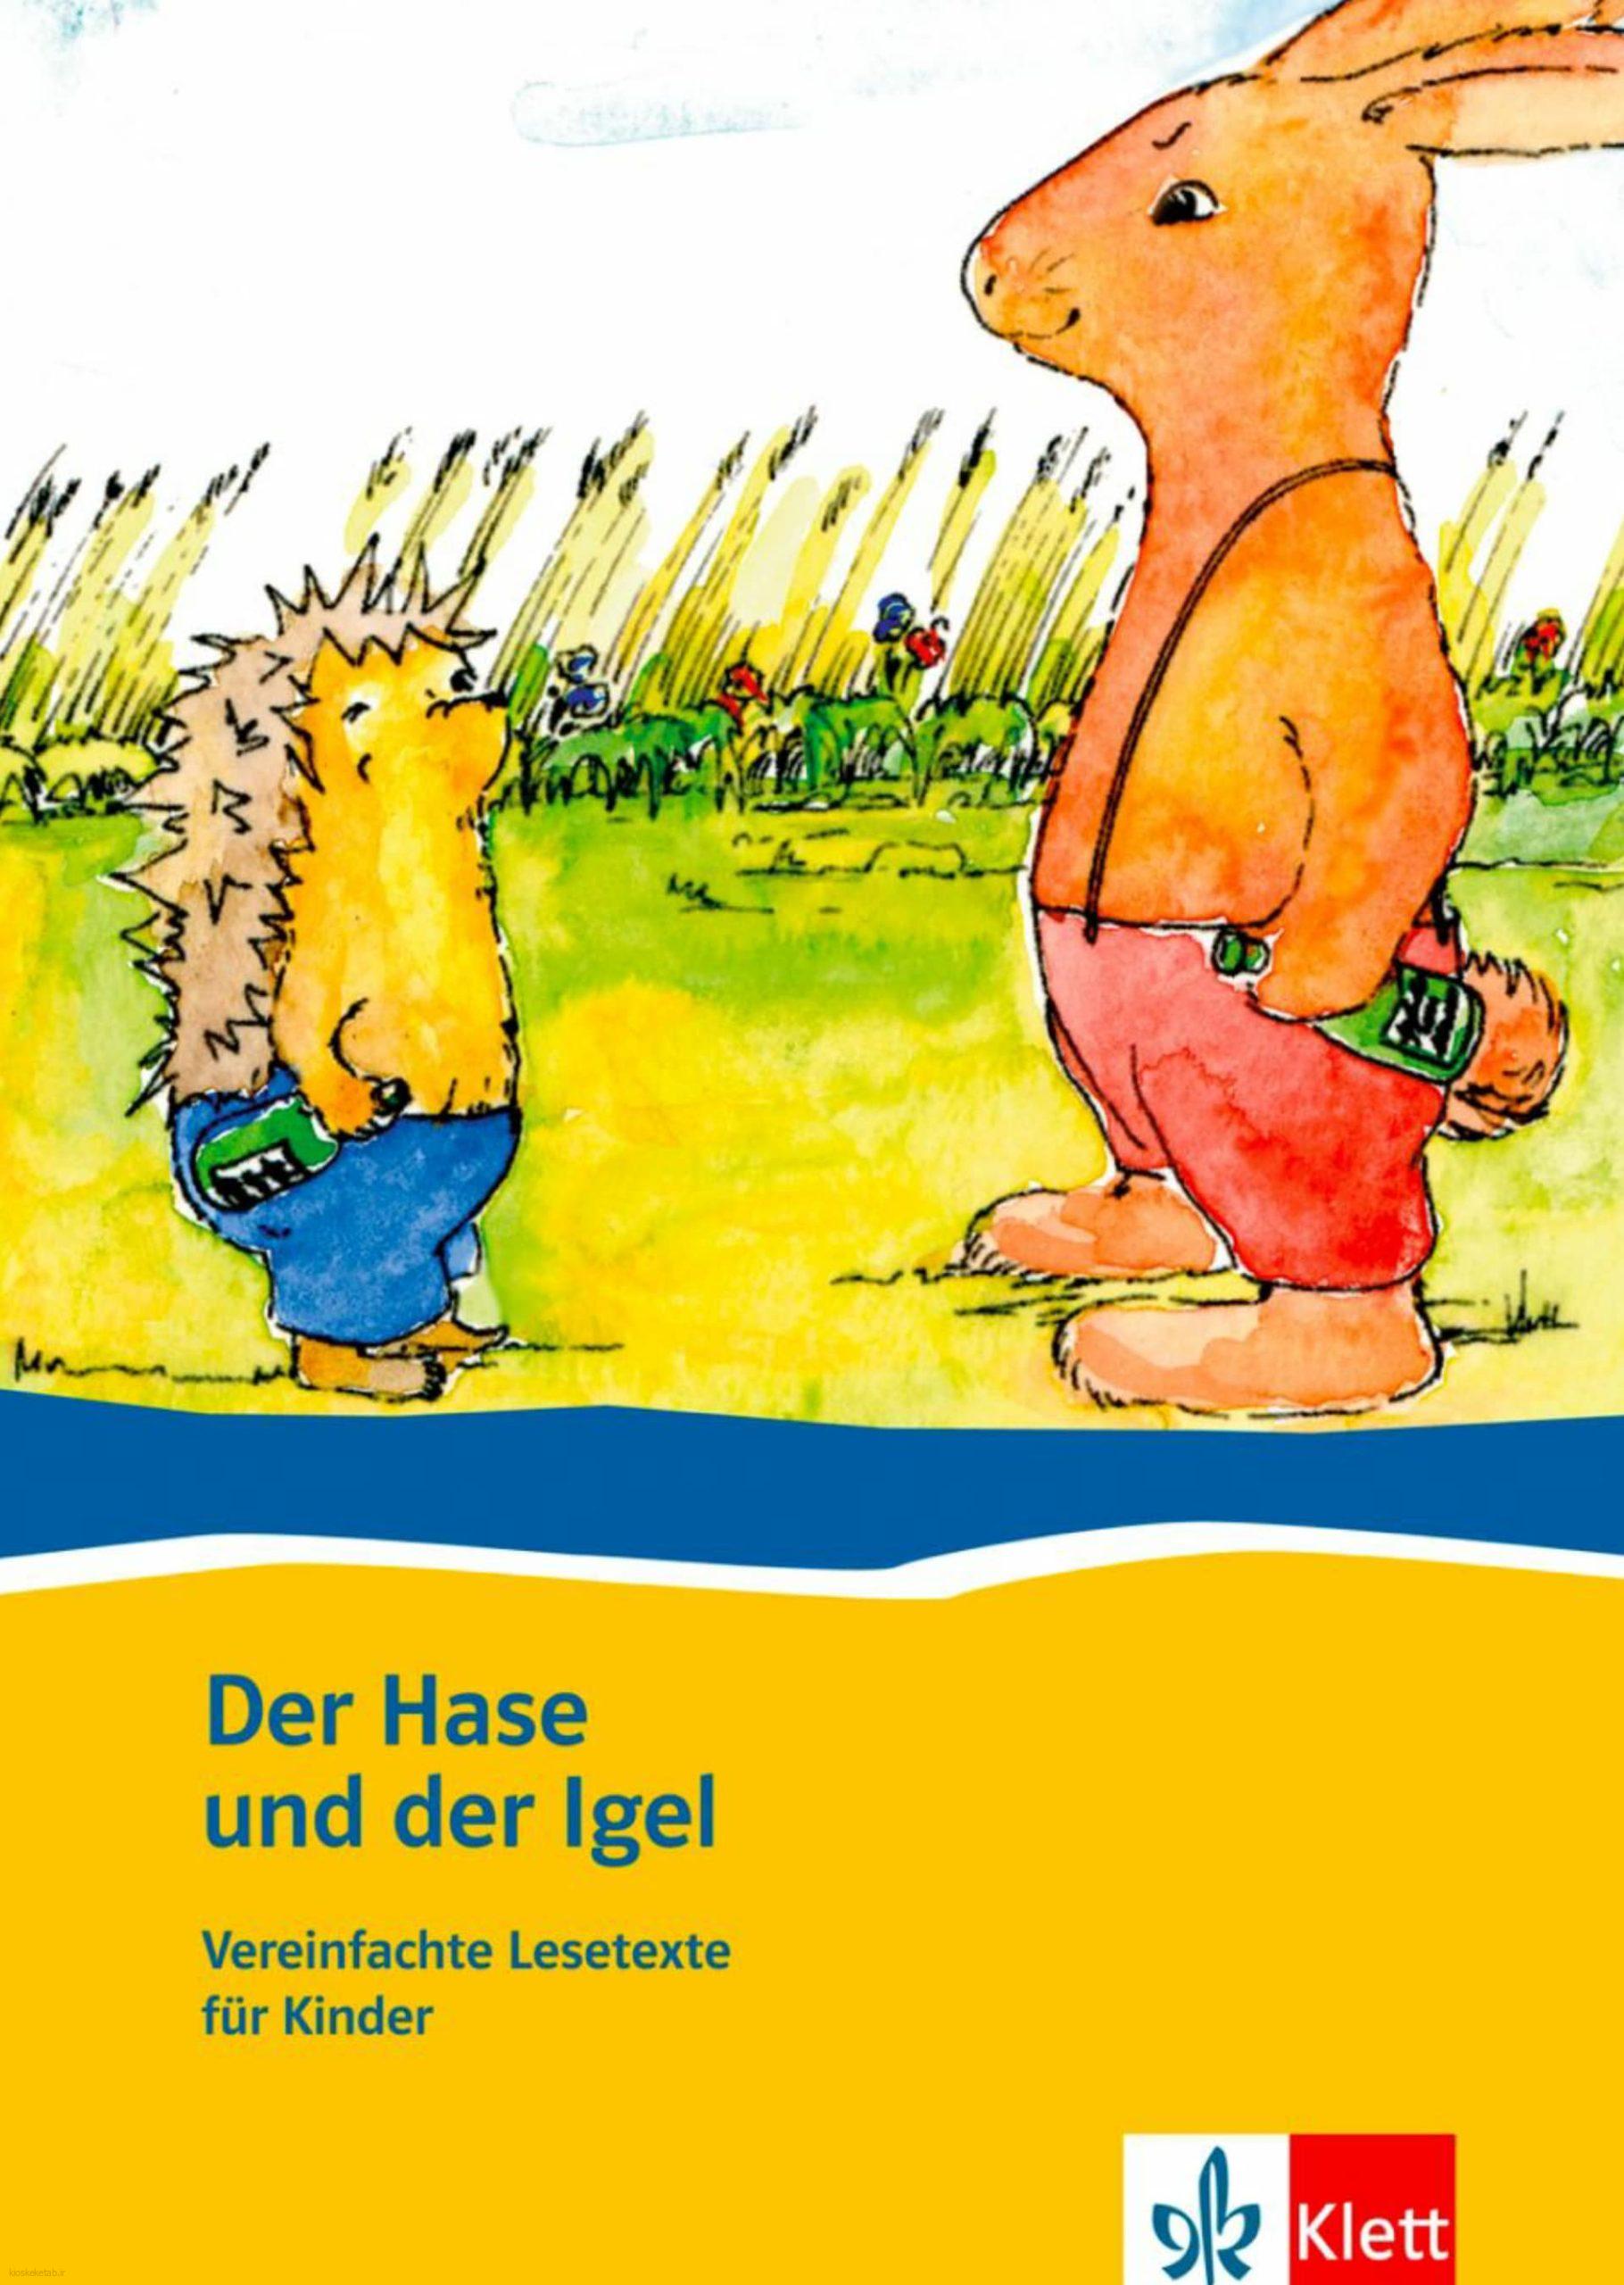 دانلود کتاب آلمانیder hase und der lgel vereinfachte lesetexte fur kinder